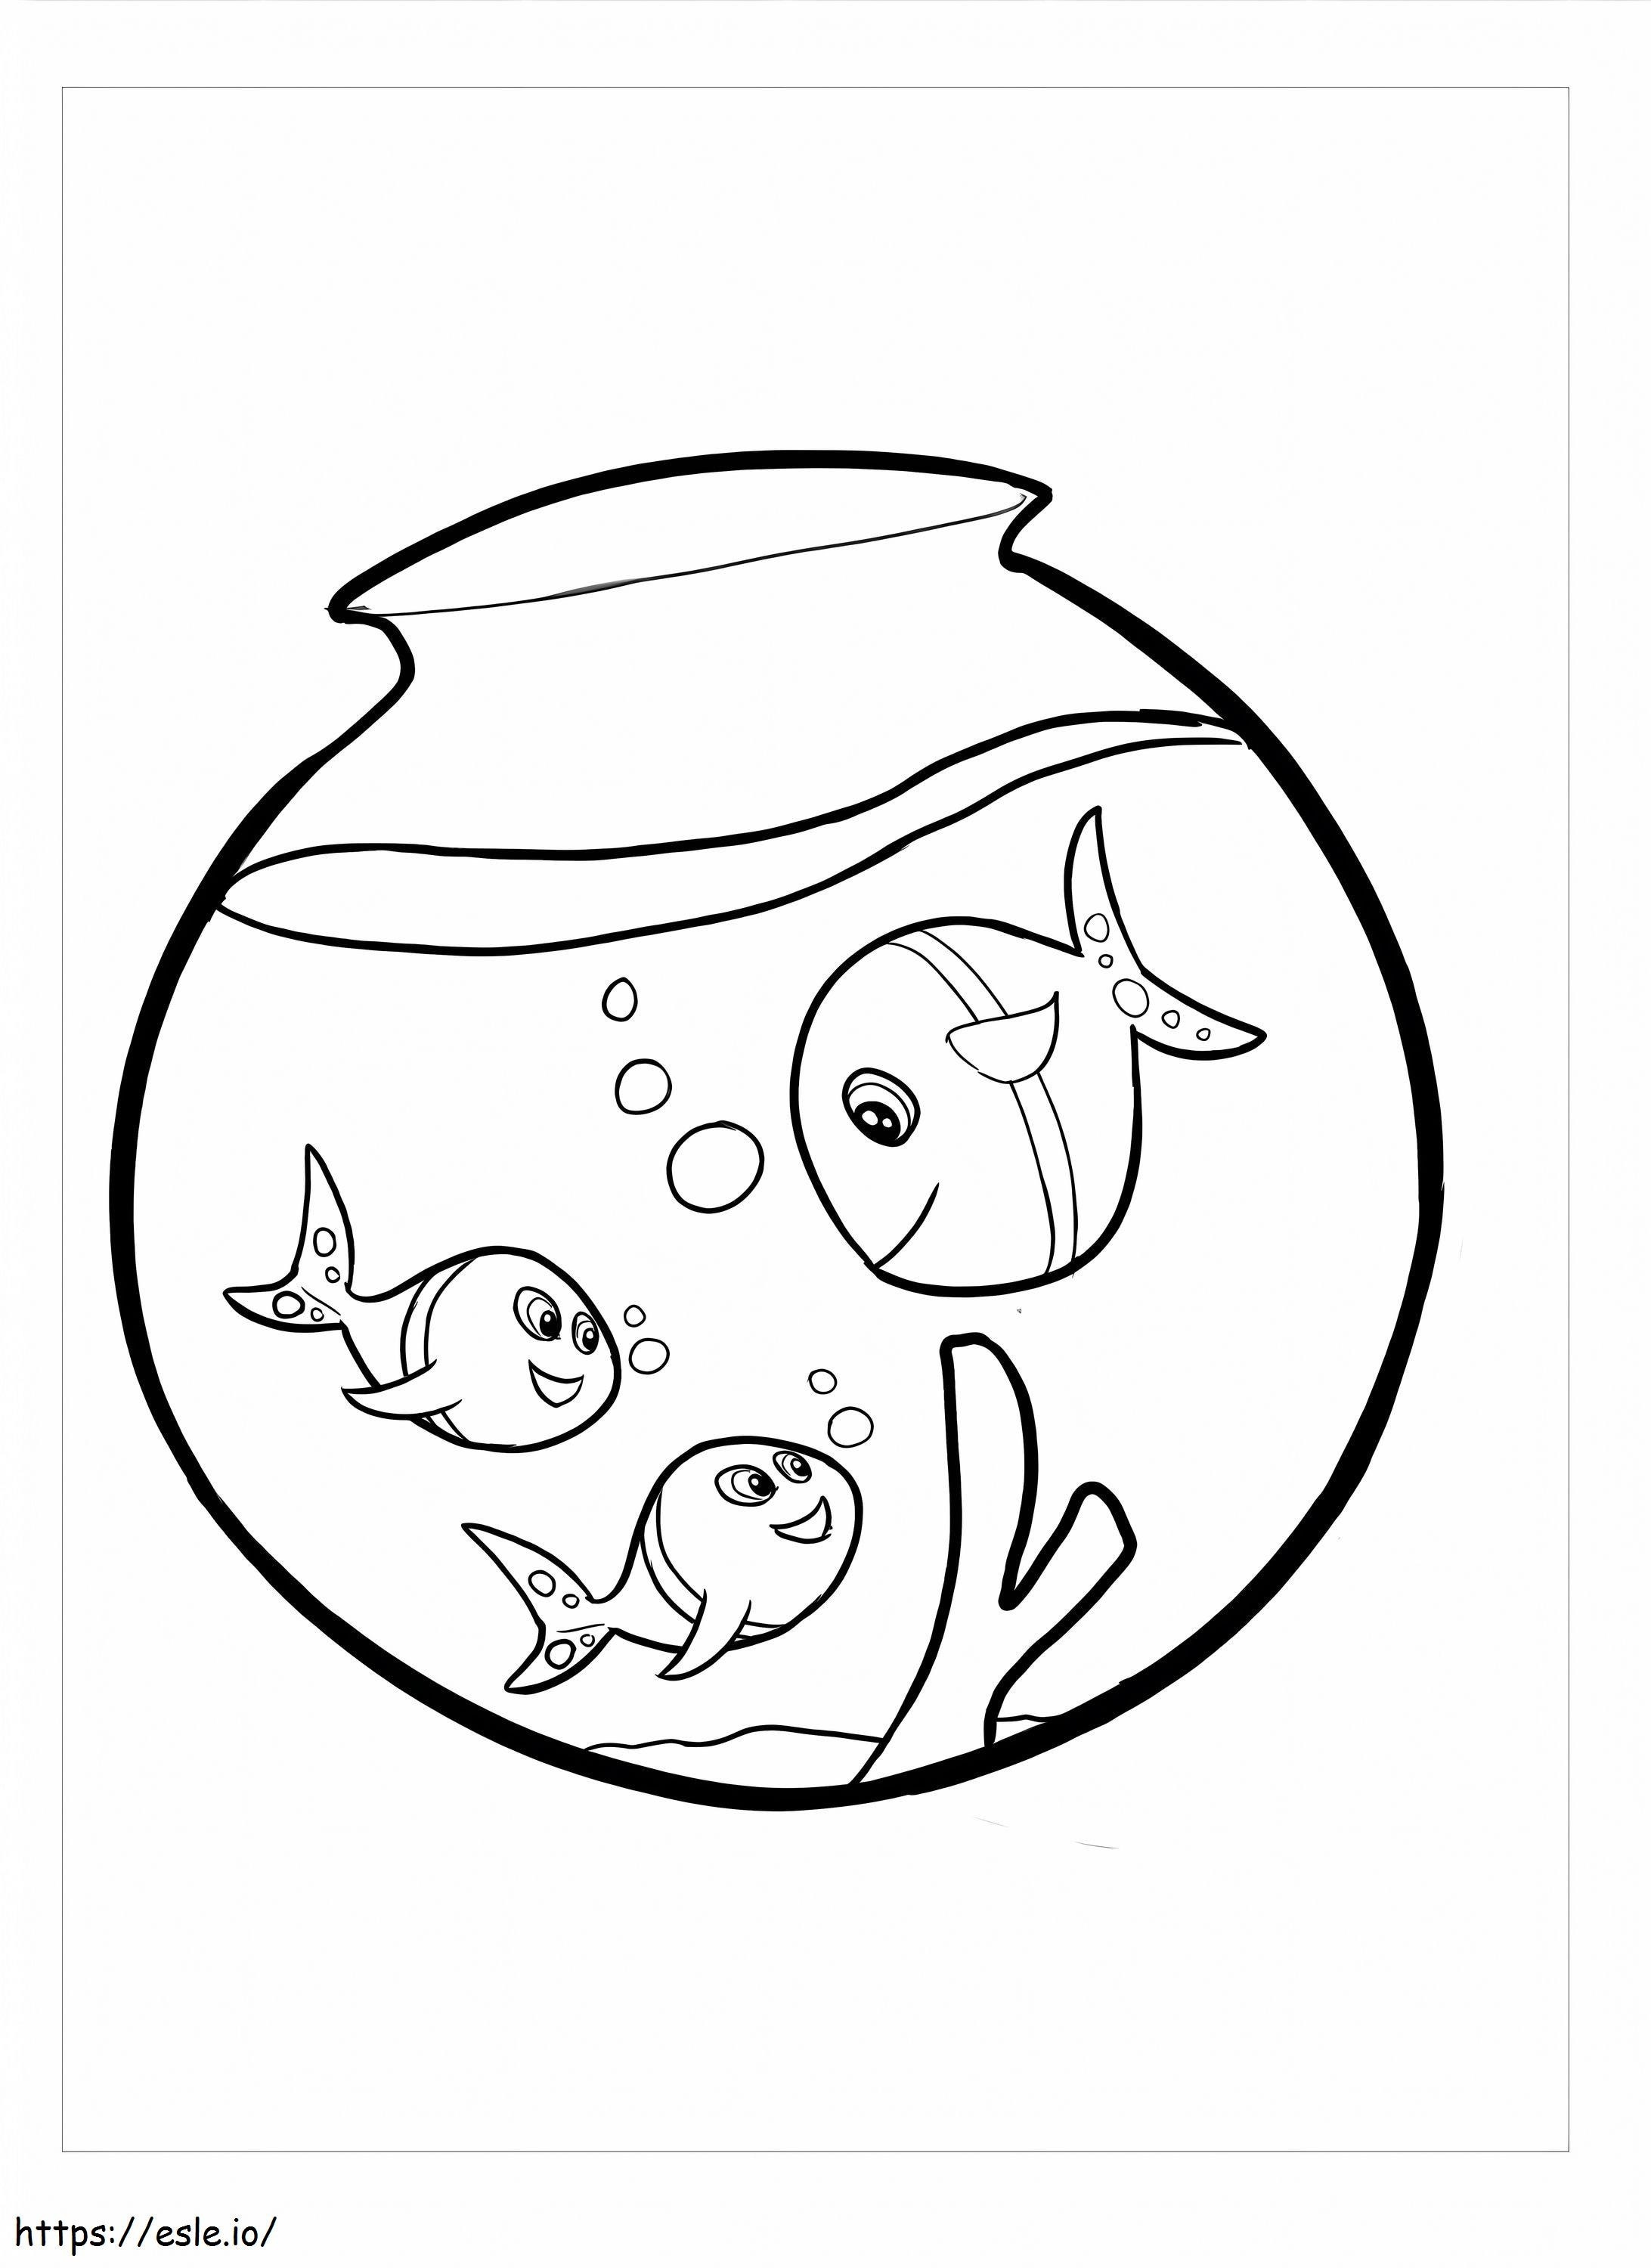 Three Fish In The Aquarium coloring page